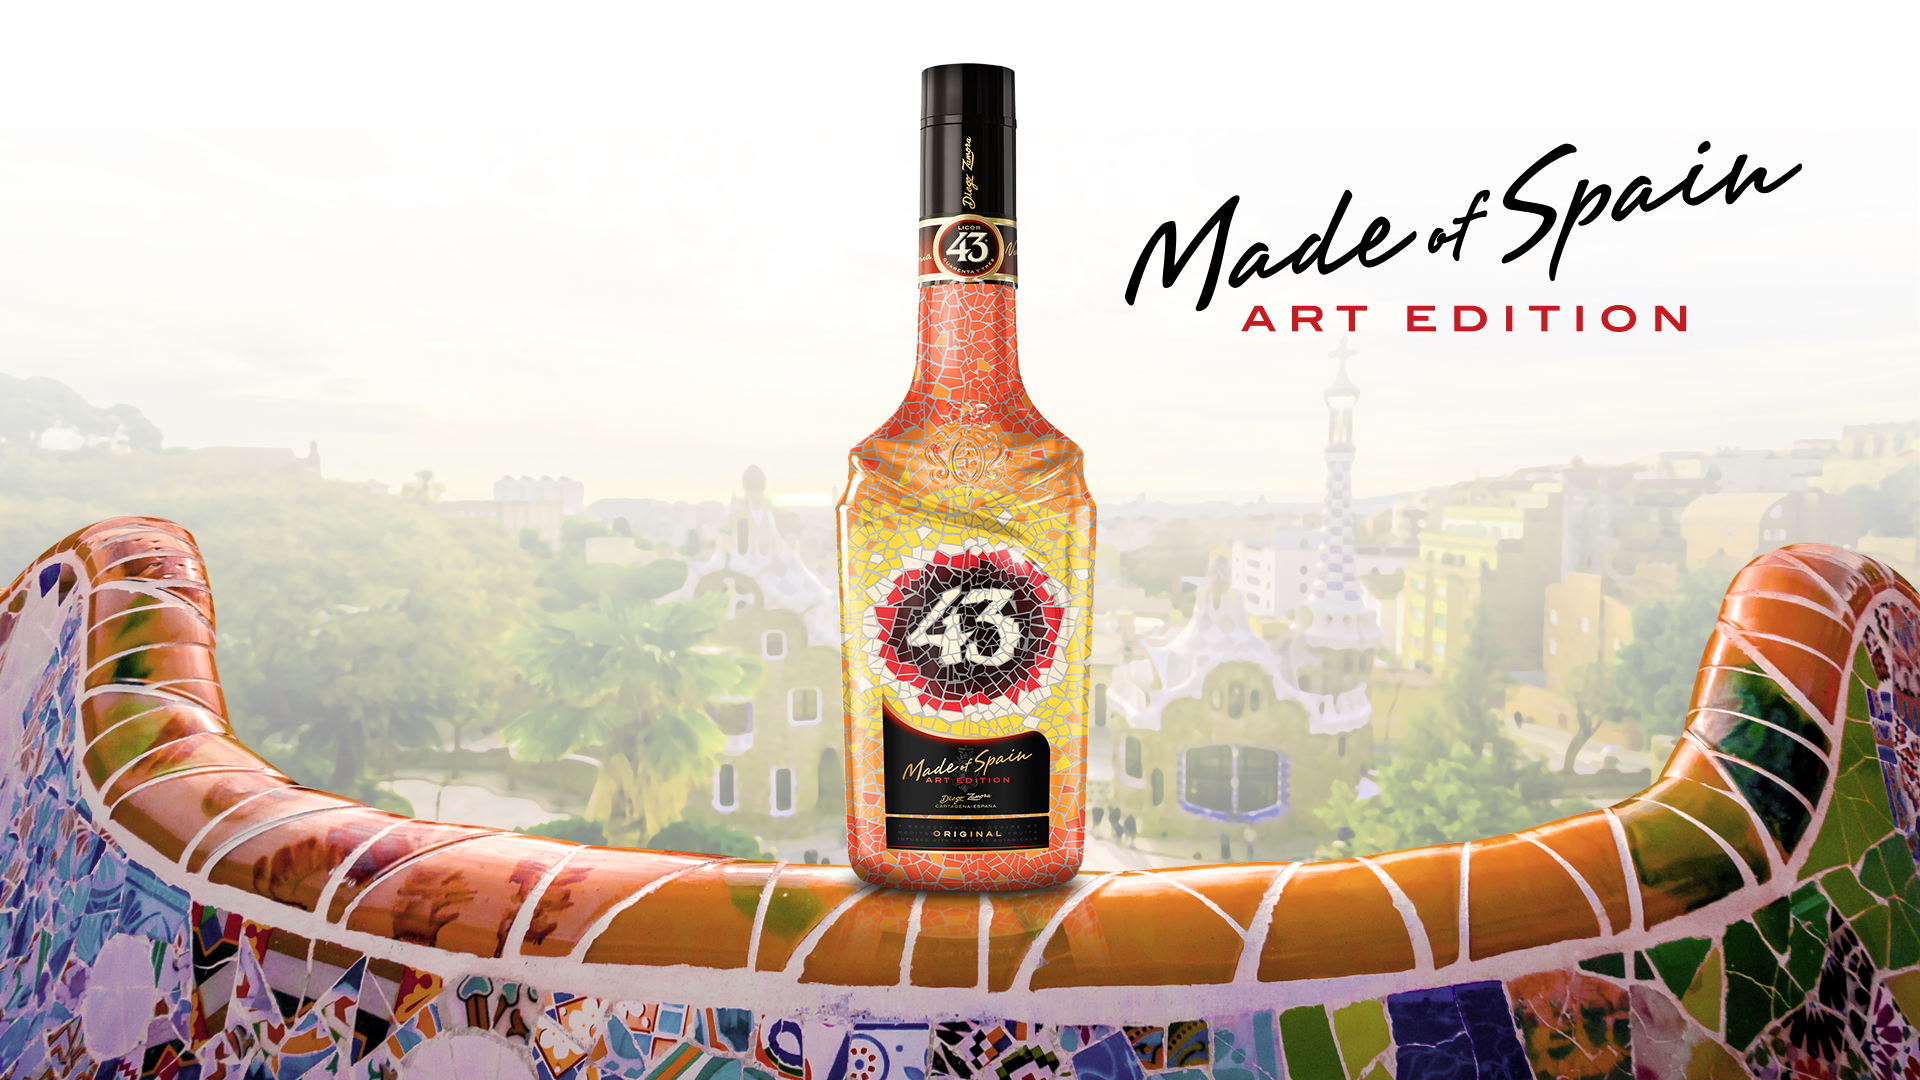 Licor 43 lanza su primera edición limitada dedicada a Antonio Gaudí - l43 original product art edition final pack sm